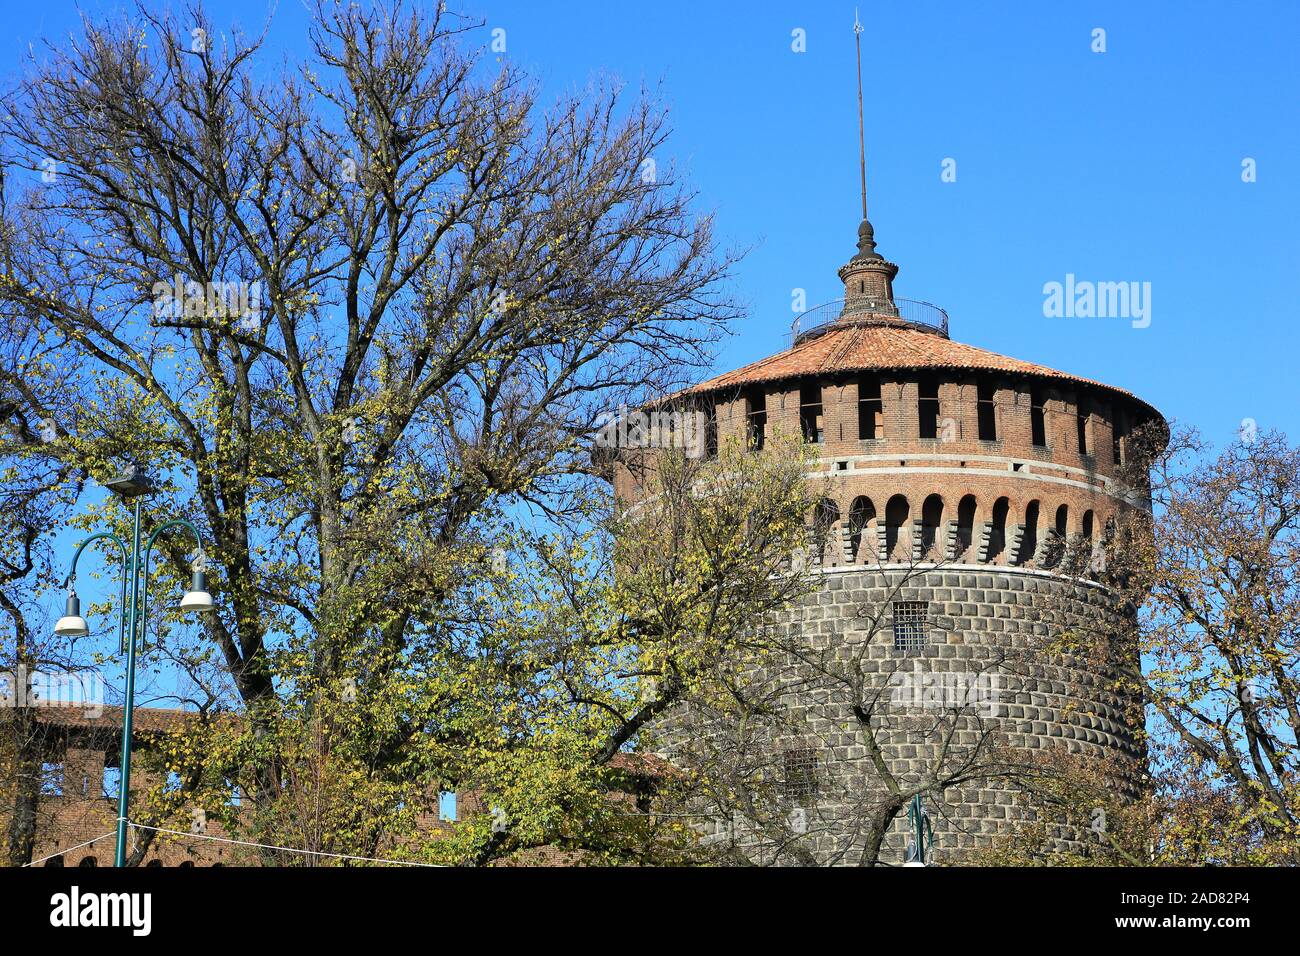 Milan, defensive castle at Castello Sforzesco Stock Photo